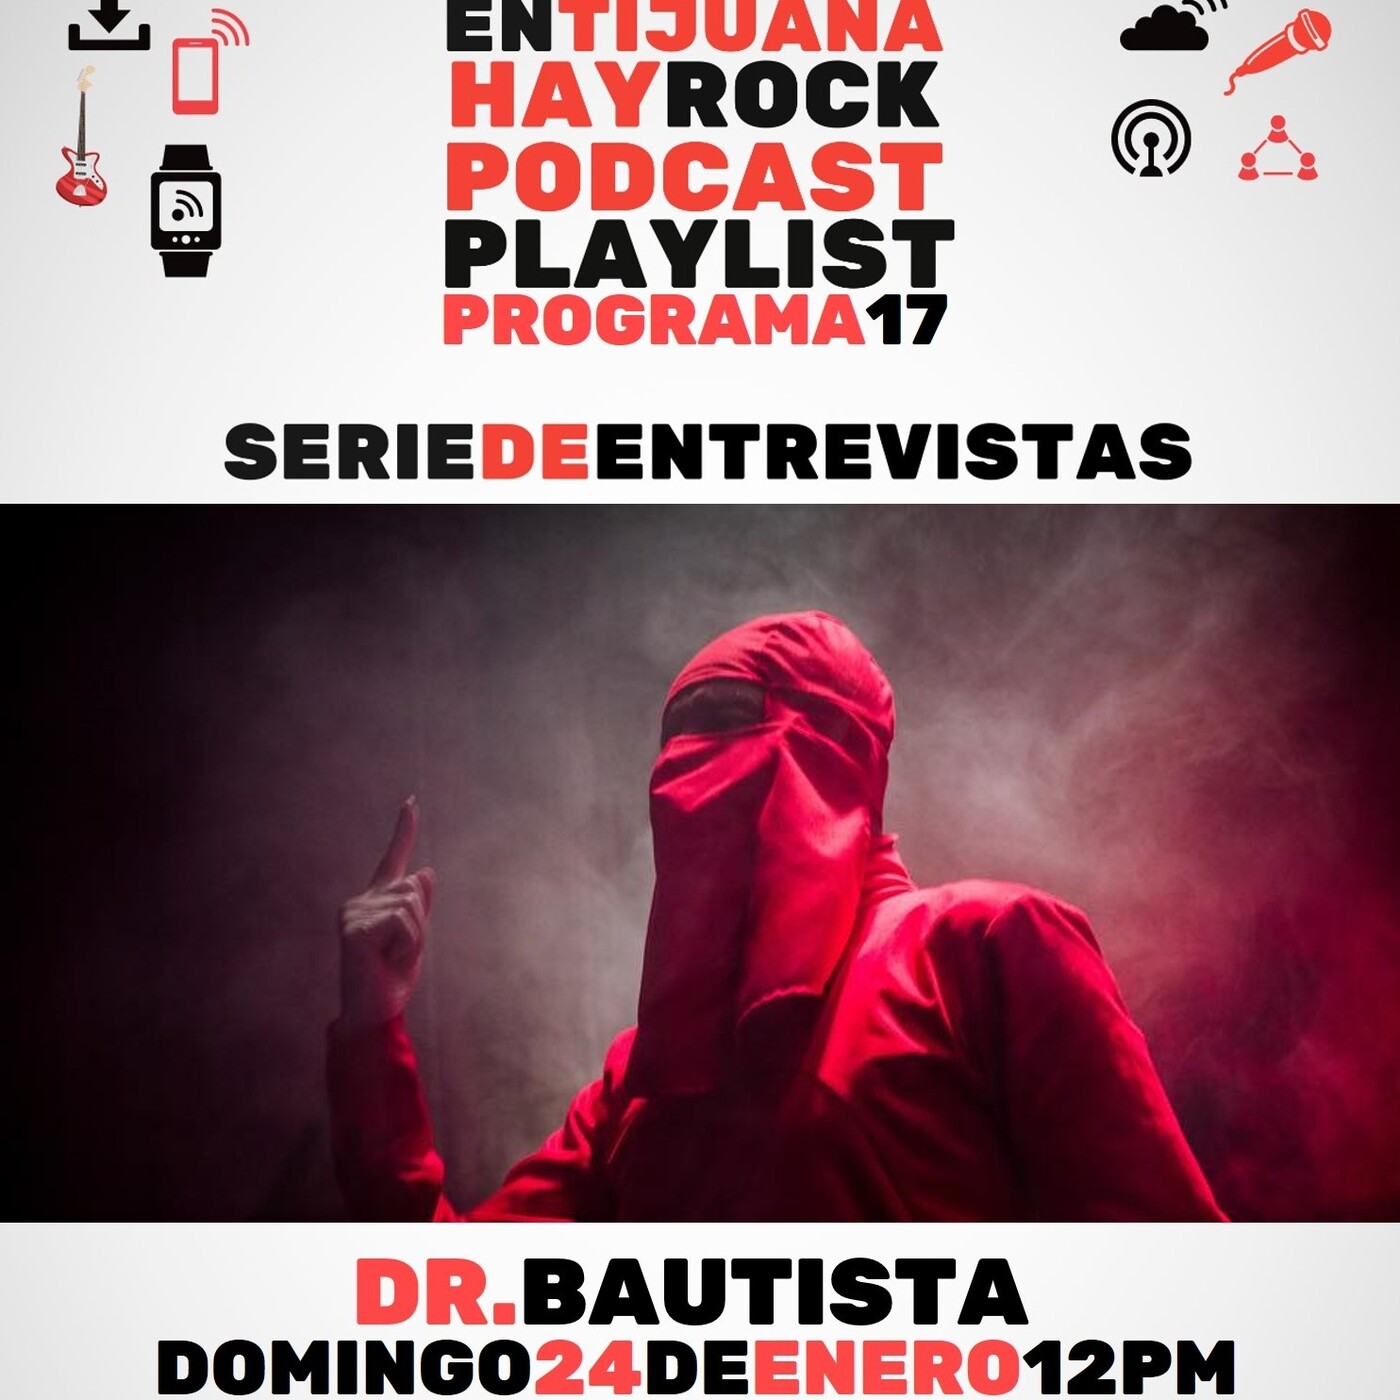 En Tijuana Hay Rock Podcast: Playlist - Programa #17: Entrevista con Dr. Bautista Image